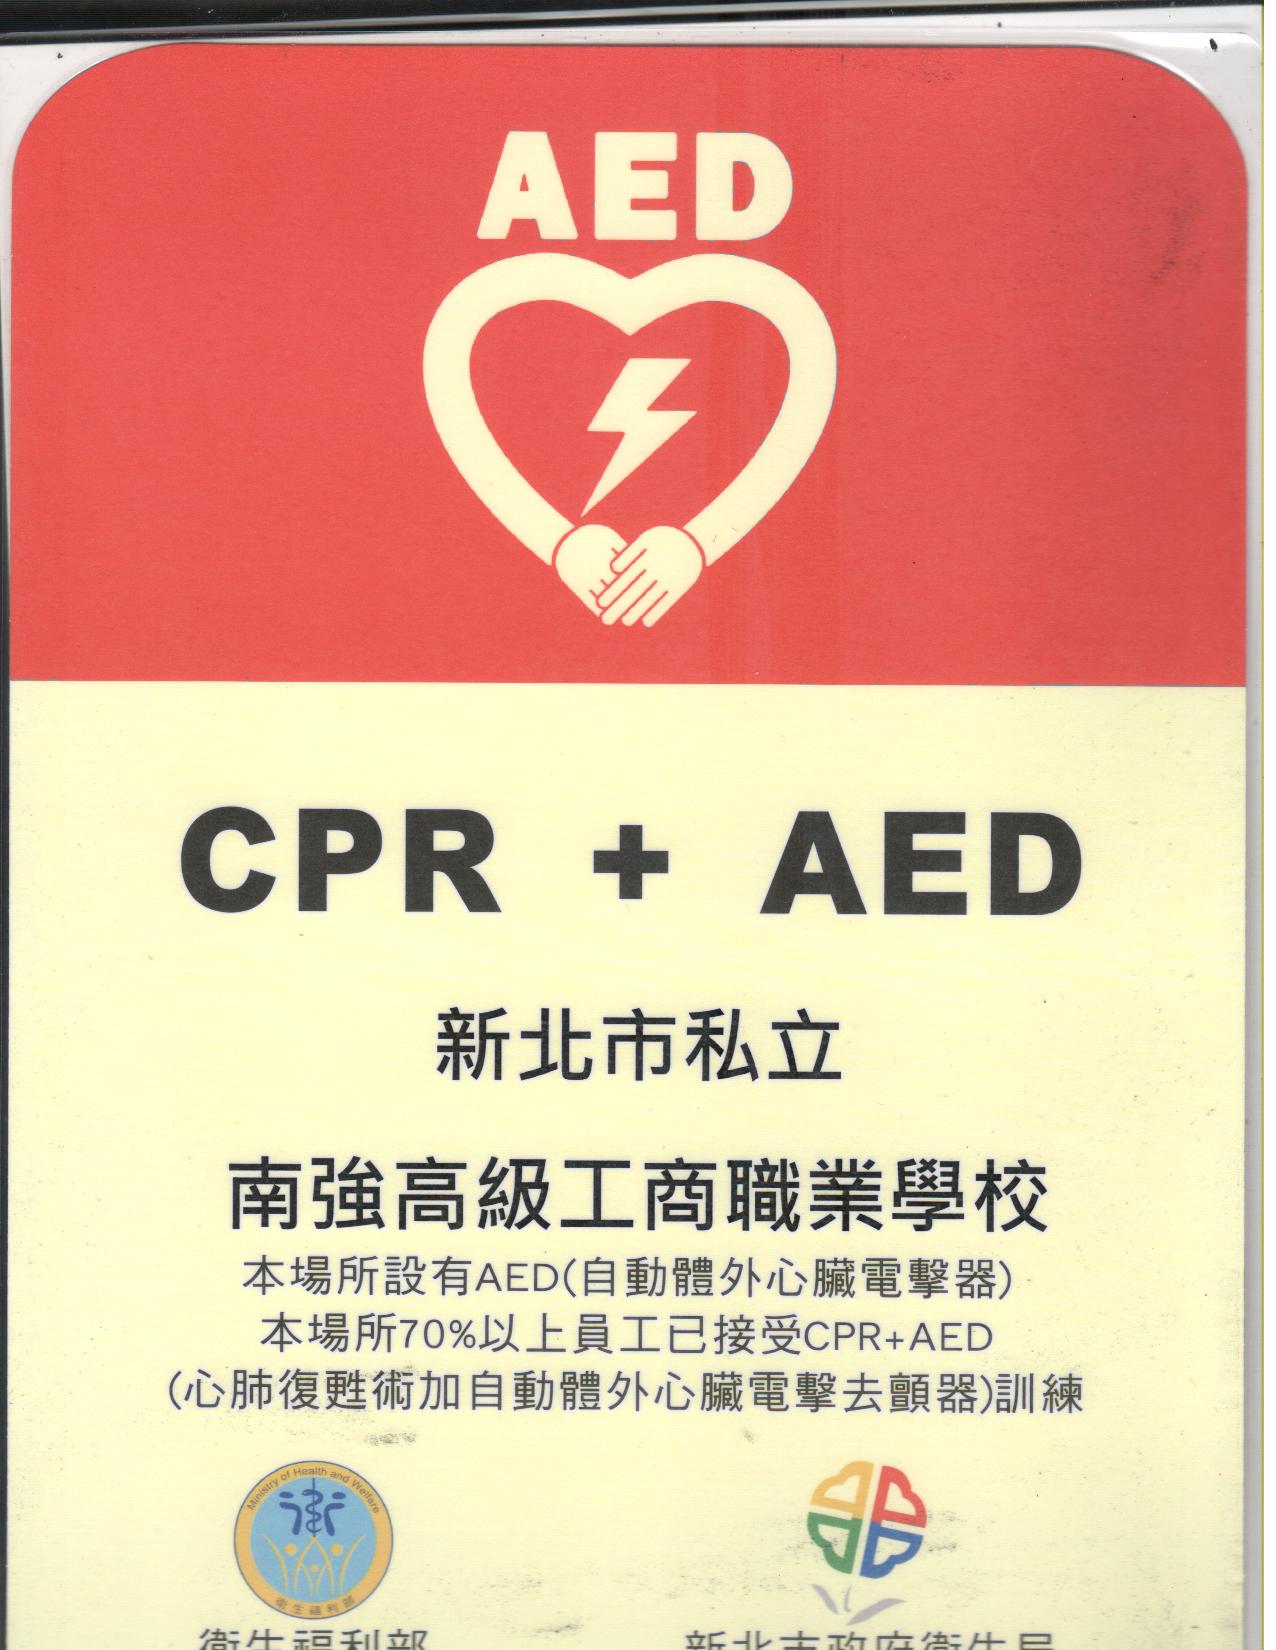 本校通過CPR+AED認證